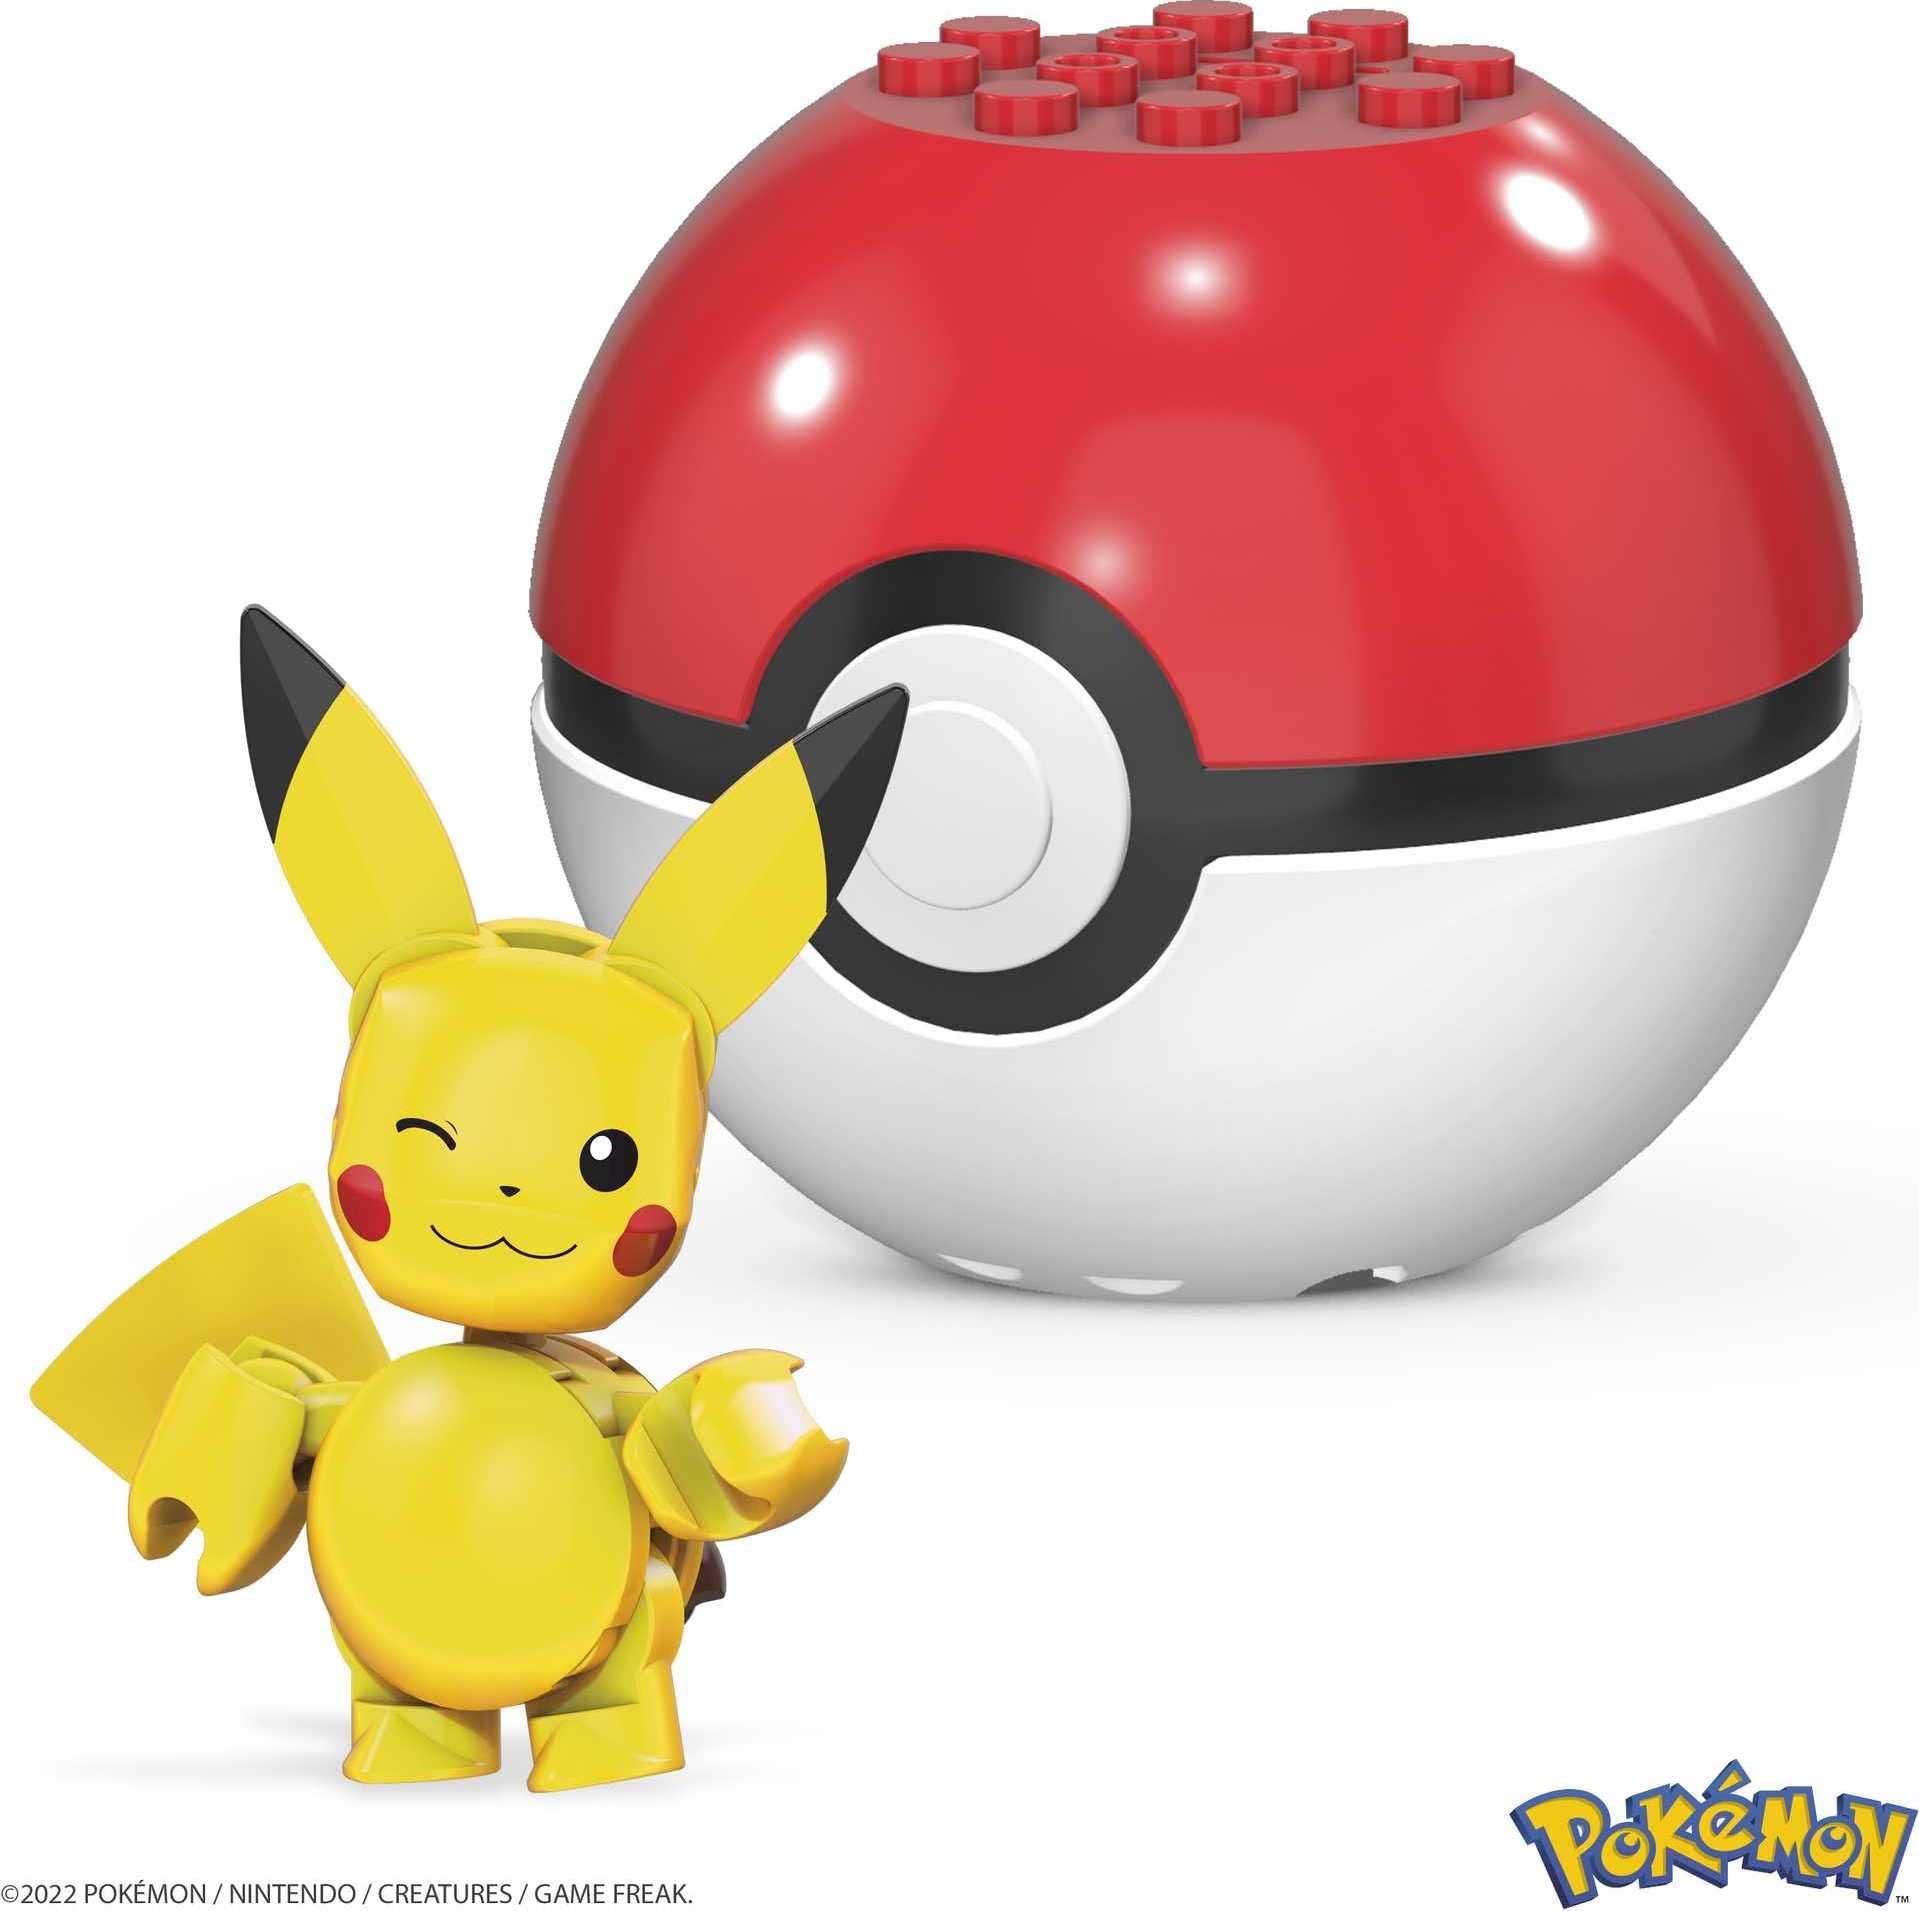 Buy MEGA Pokémon Action Figure Pikachu Collectible Building Toy